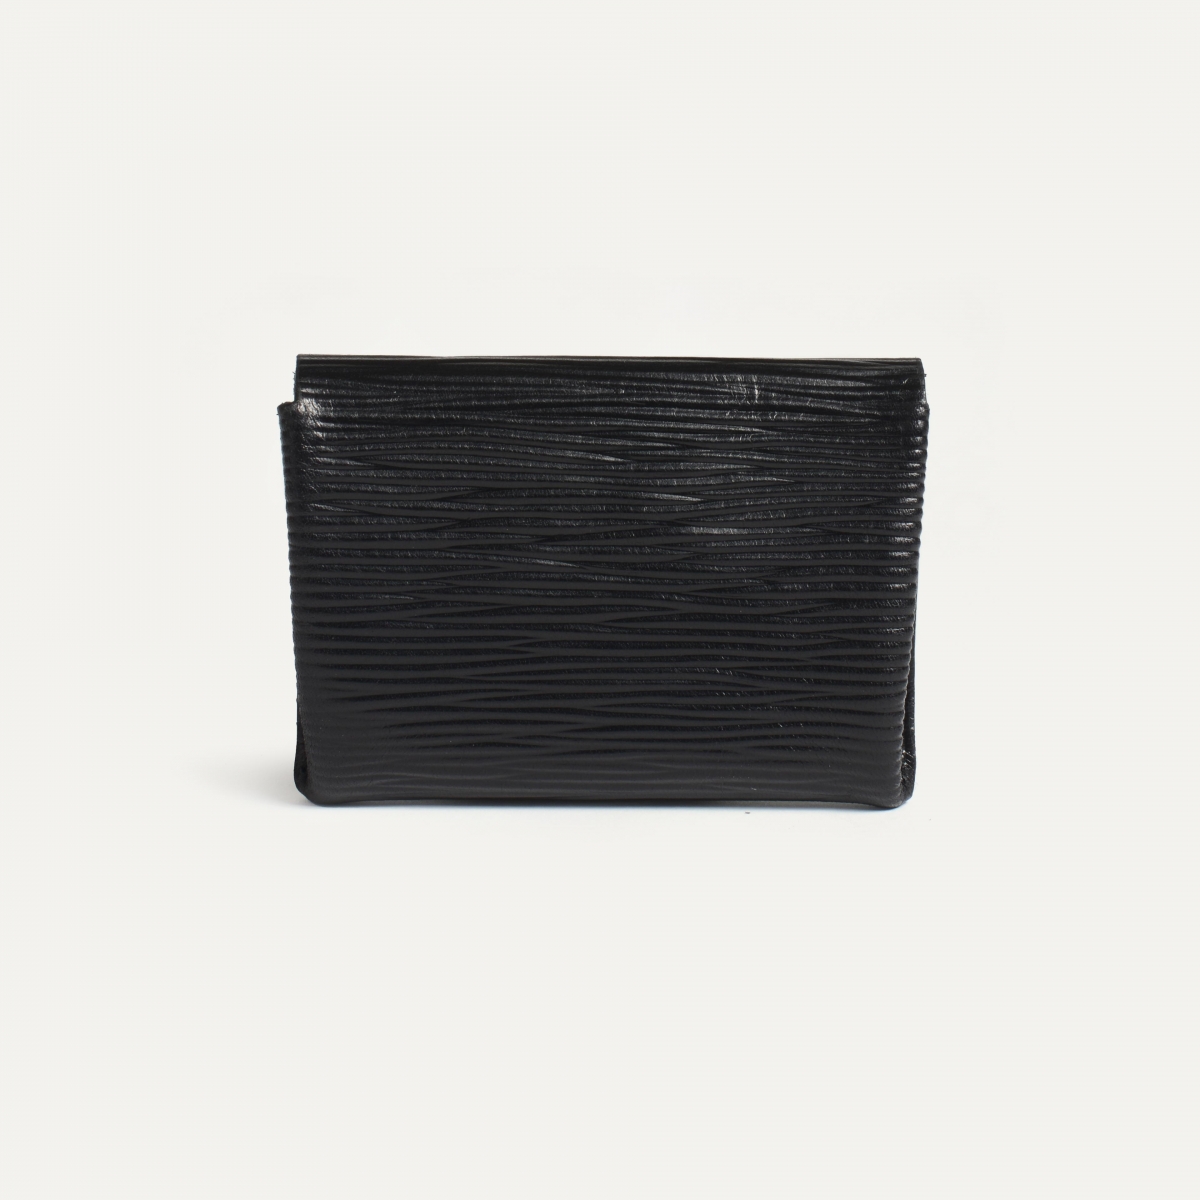 Talbin Shoemaker purse - black épi leather (image n°2)